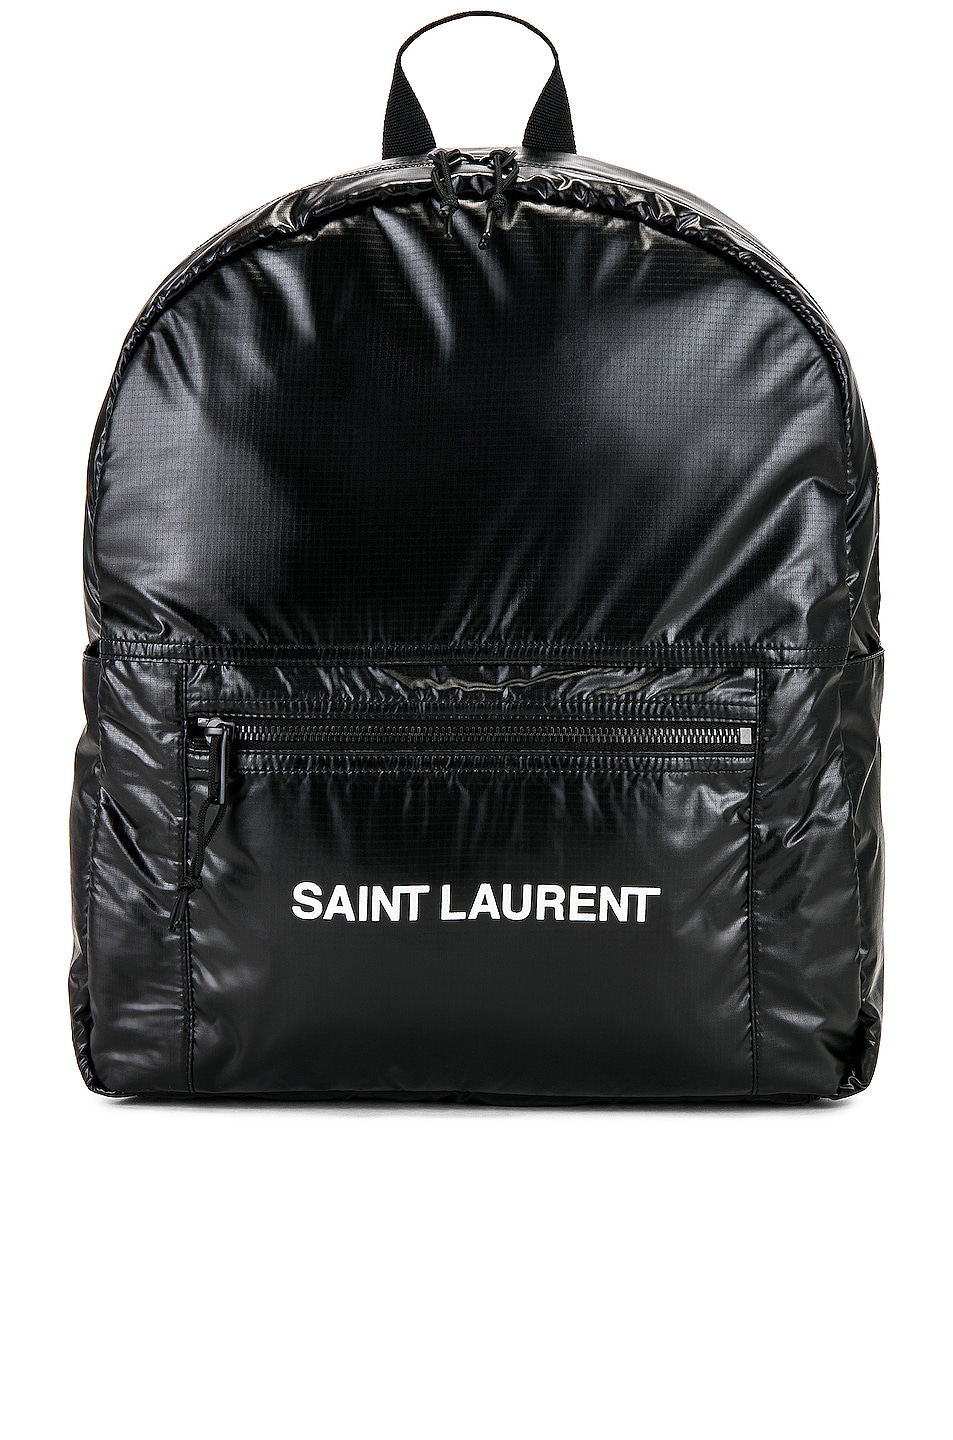 Saint Laurent Nuxx Backpack in Black